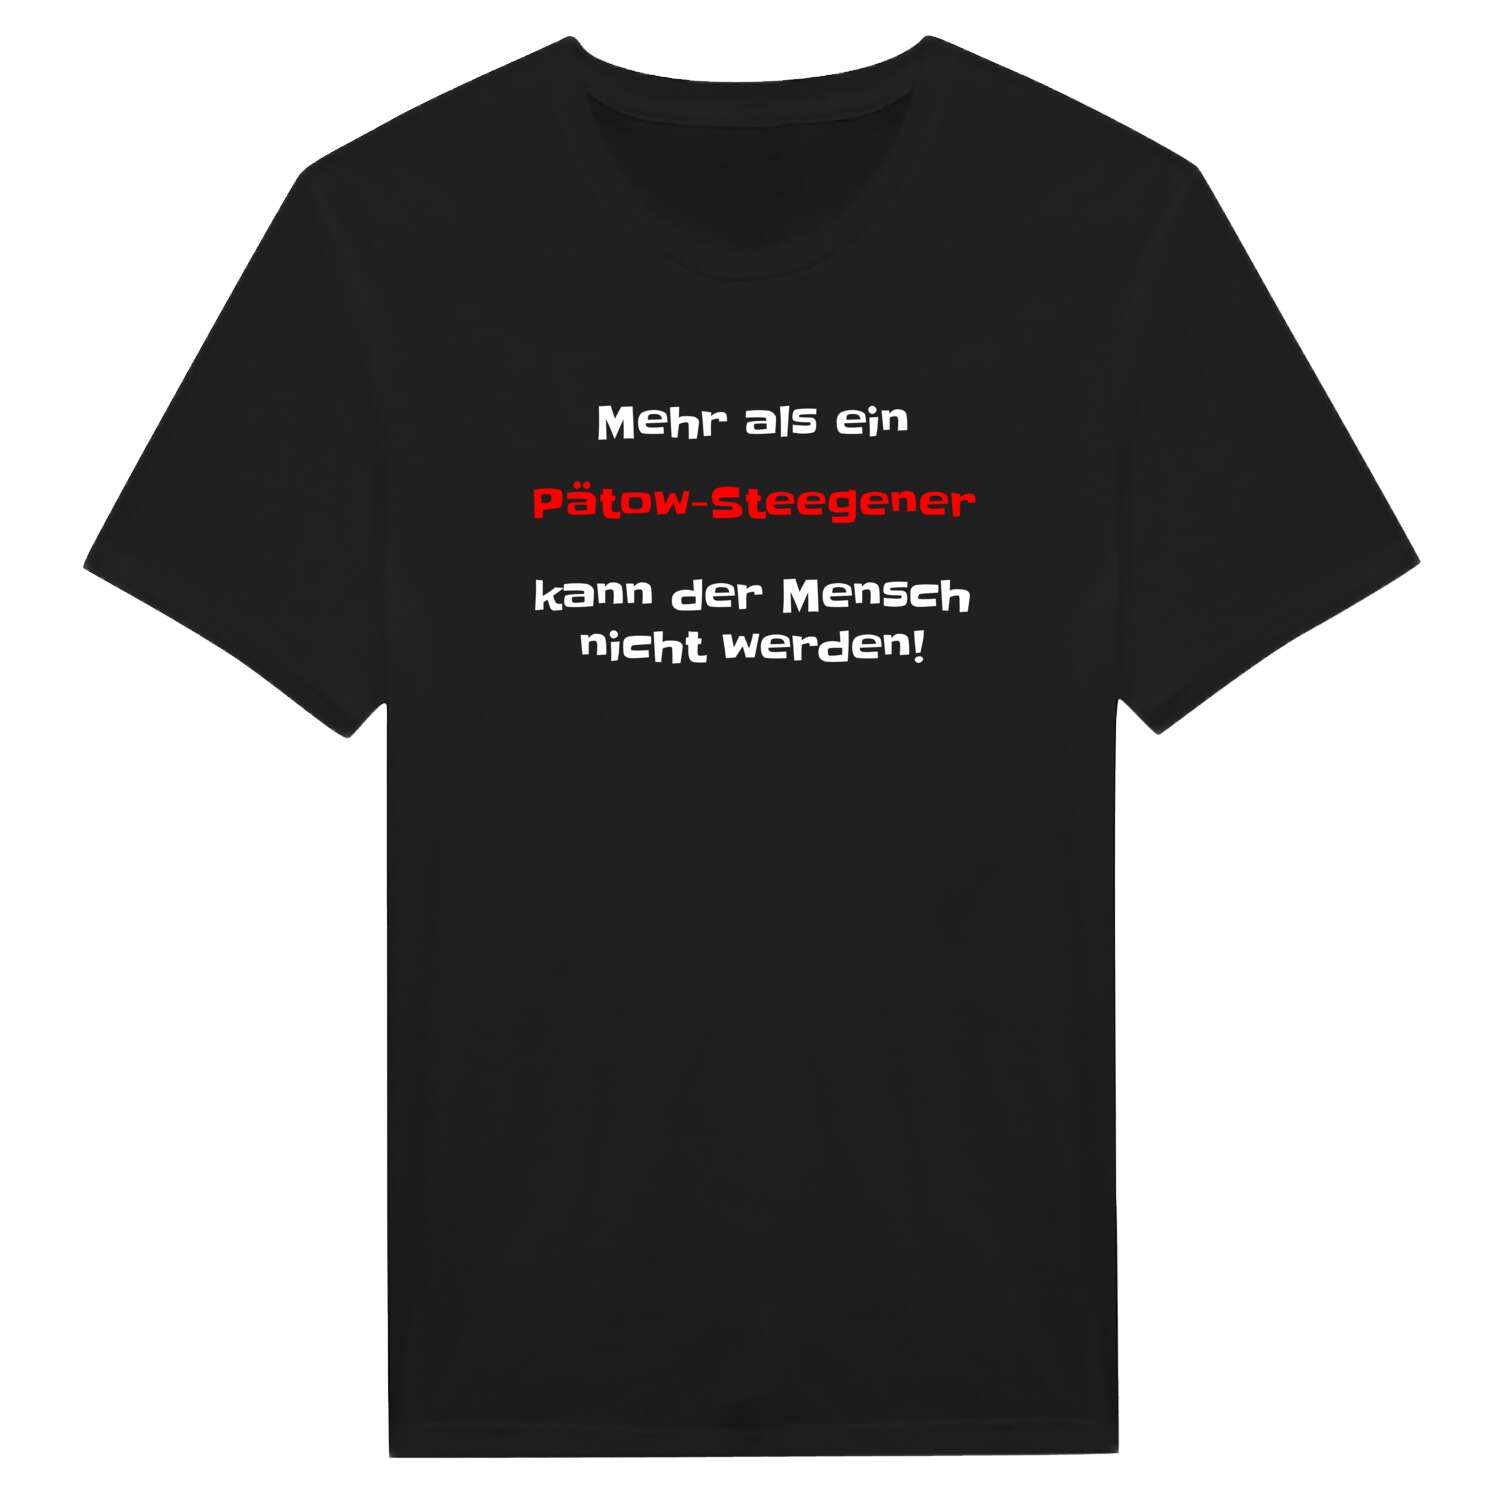 Pätow-Steegen T-Shirt »Mehr als ein«